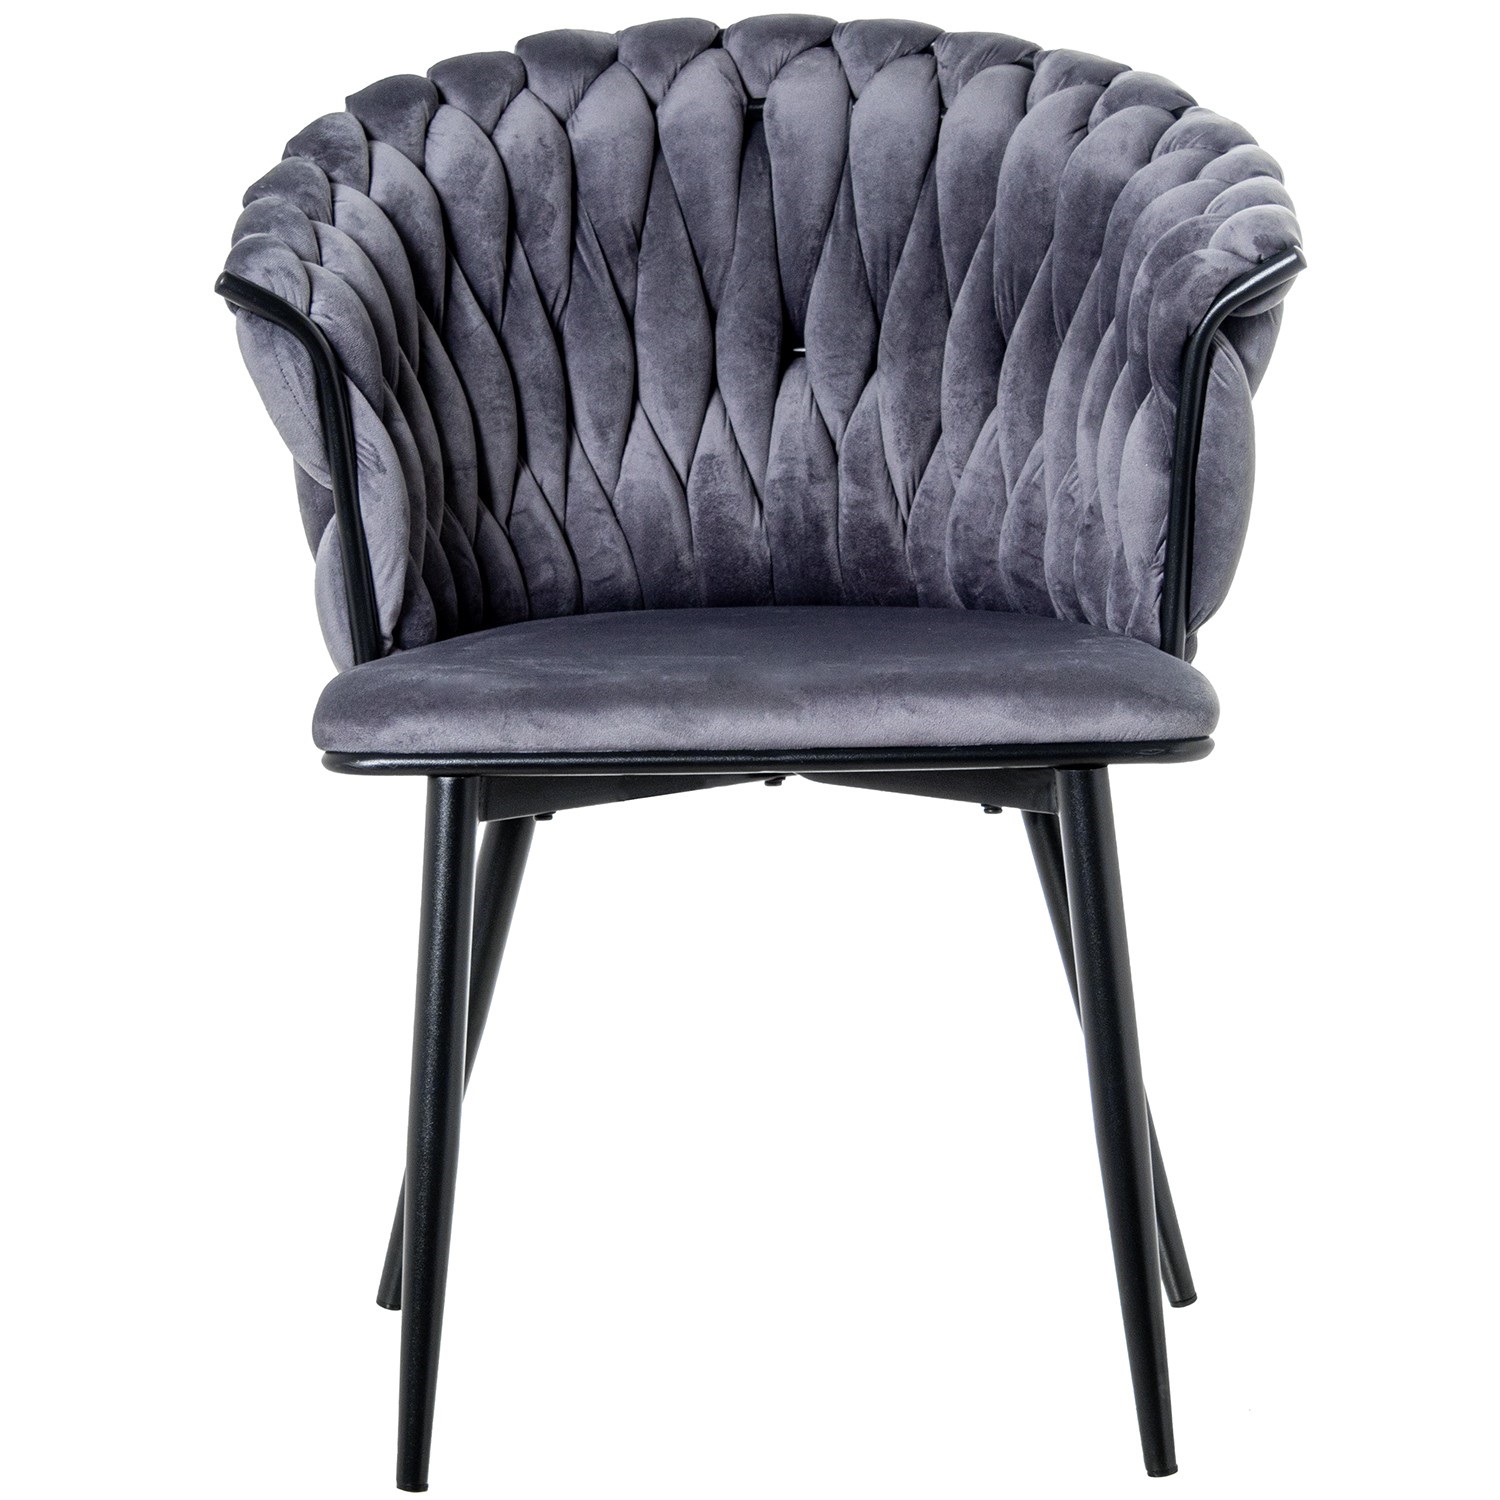 35326-silla-terciopelo-trenzado-gris-negro-1.jpg